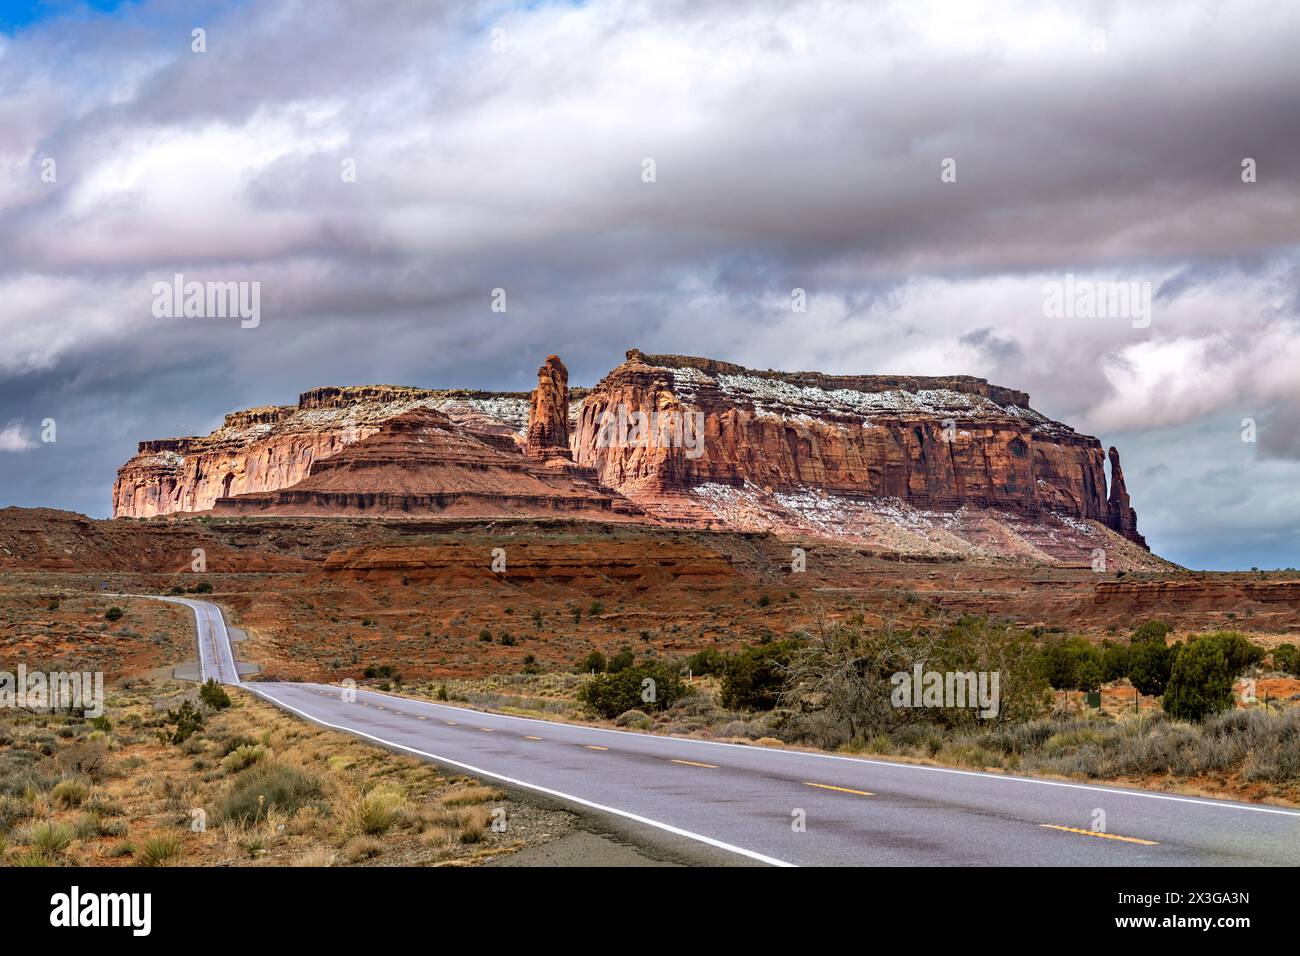 Une belle chaîne de montagnes enneigée le long de l'autoroute 163 à Monument Valley met en valeur les paysages magnifiques et accidentés pour les touristes. Banque D'Images